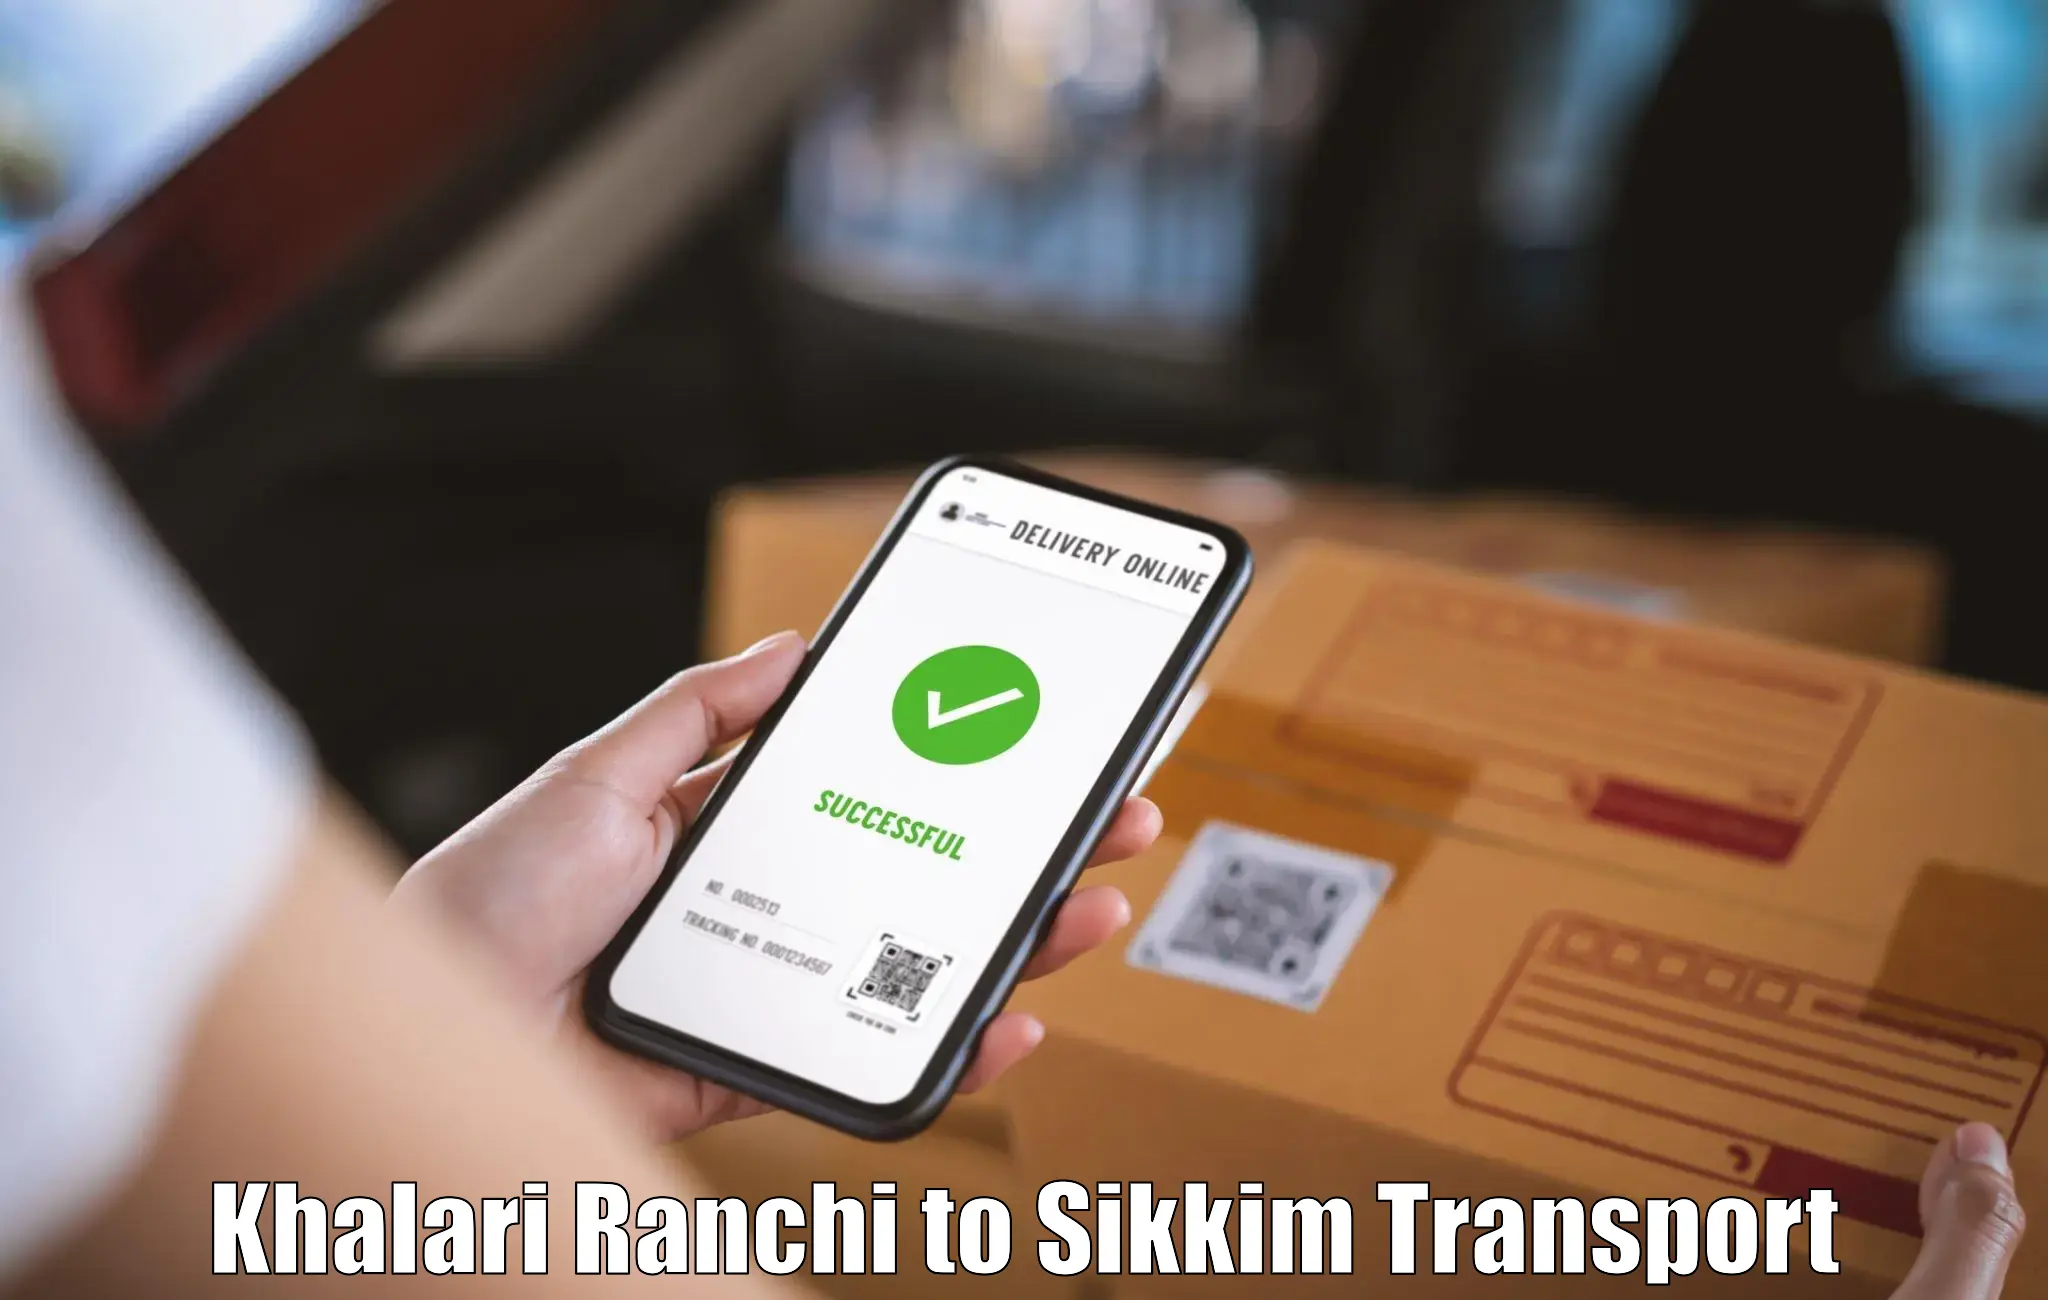 Furniture transport service Khalari Ranchi to Mangan